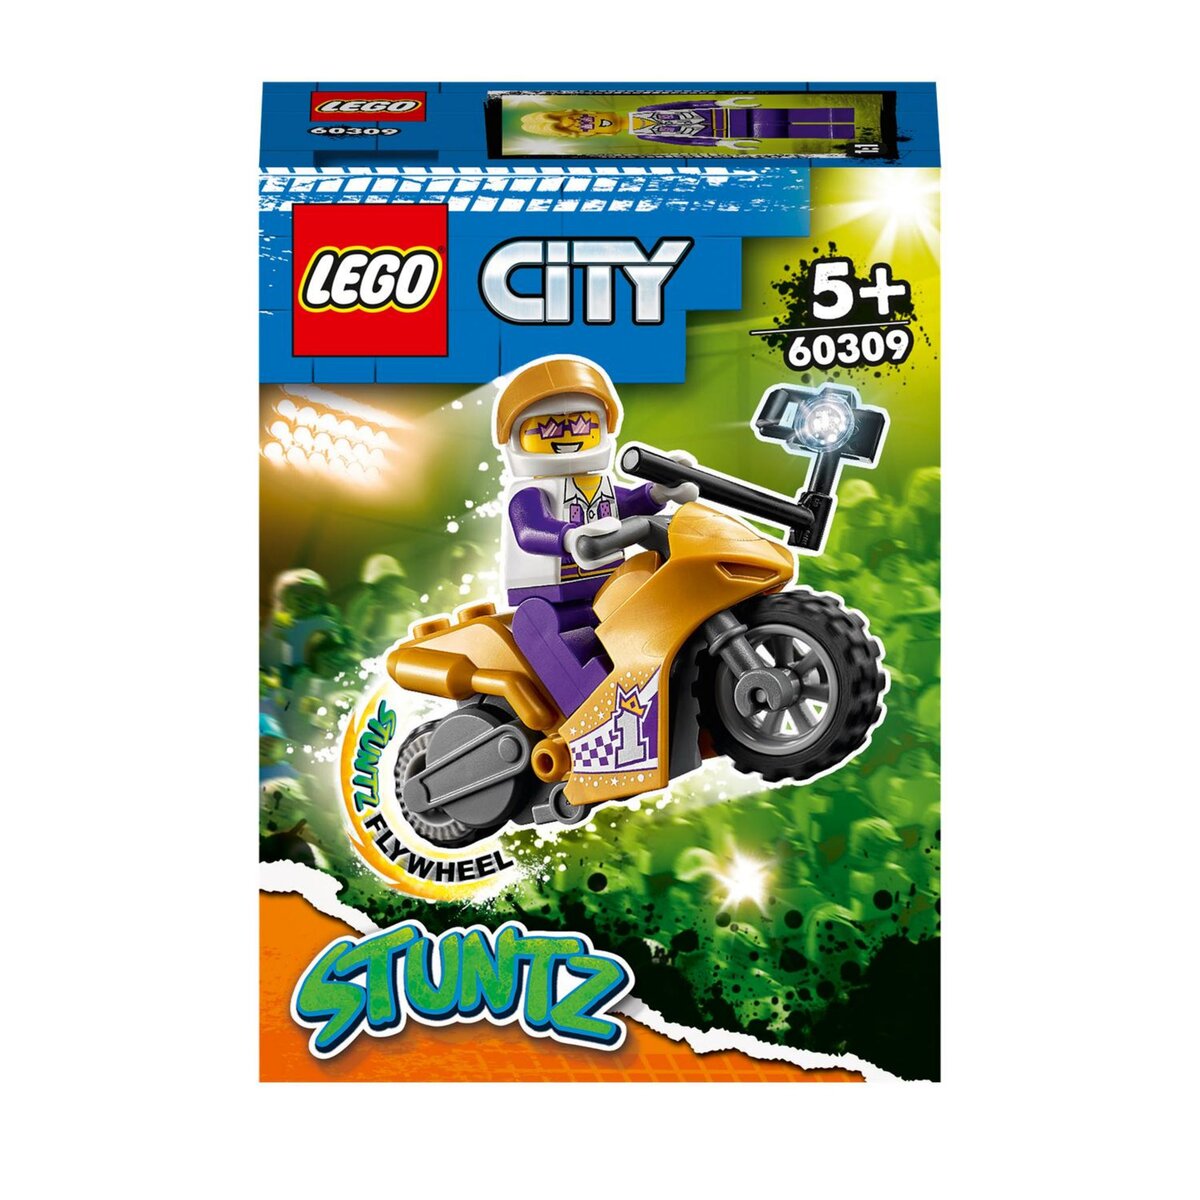 LEGO® City 60356 La moto de cascade de l'Ours